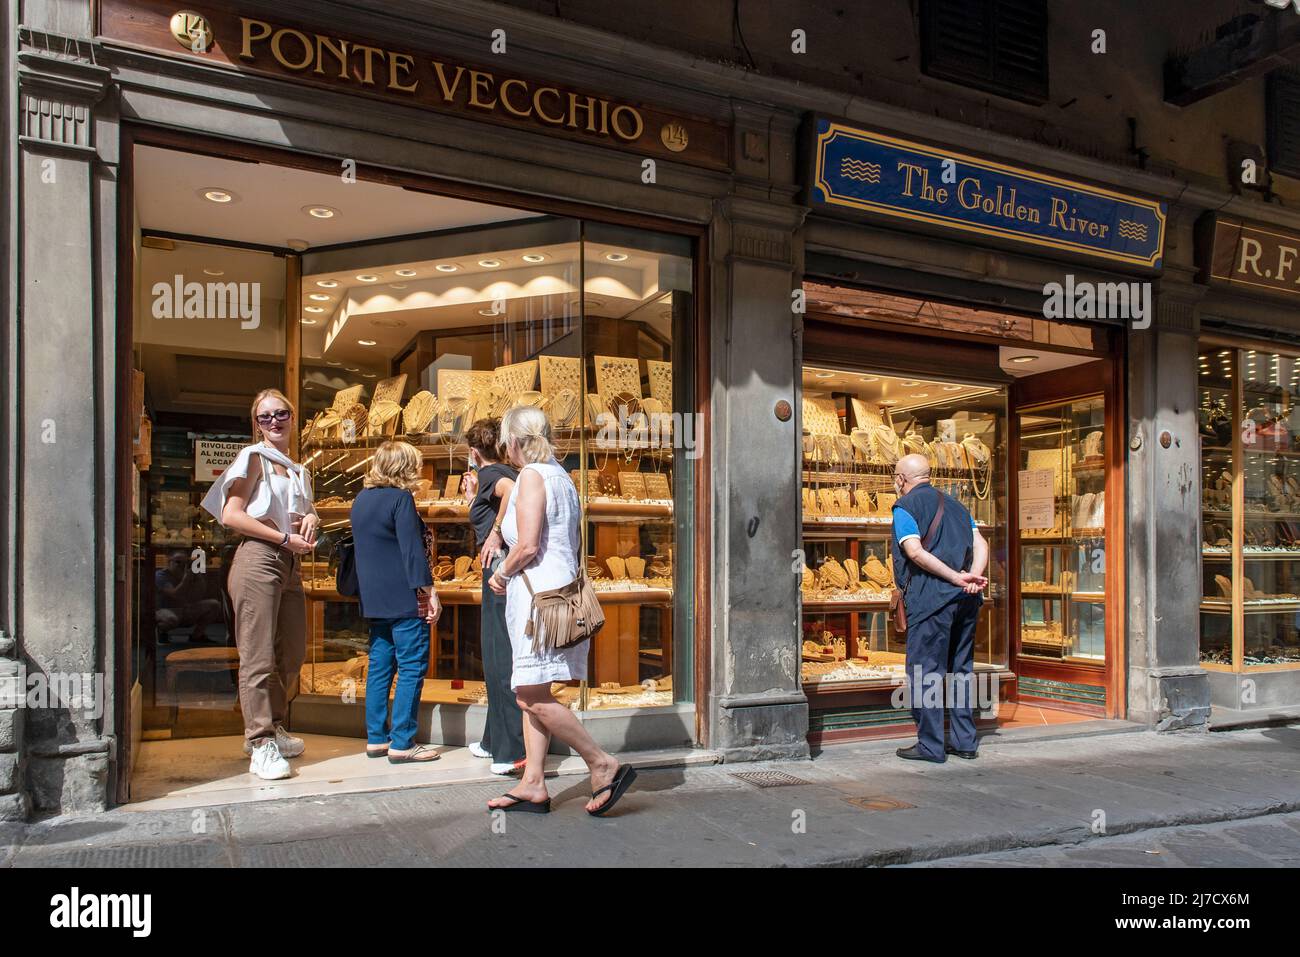 Jewelers shops, Ponte Vecchio bridge, Florence, Tuscany, Italy Stock Photo